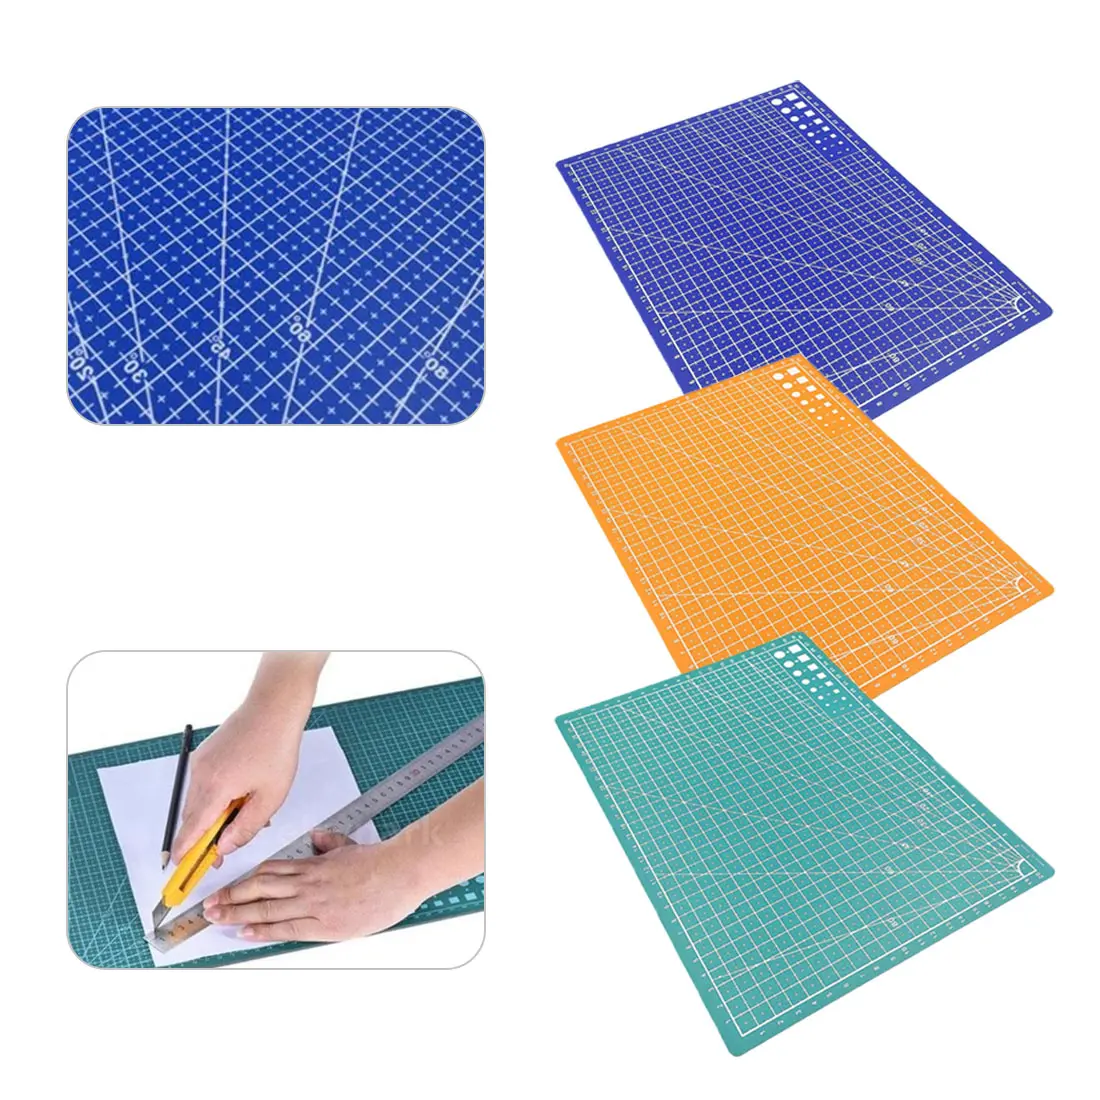 Ремесло карты ткань кожи и картона швейные инструменты 1PC A4 сетки линии самовосhealing вающиеся режущие колодки пластины резак